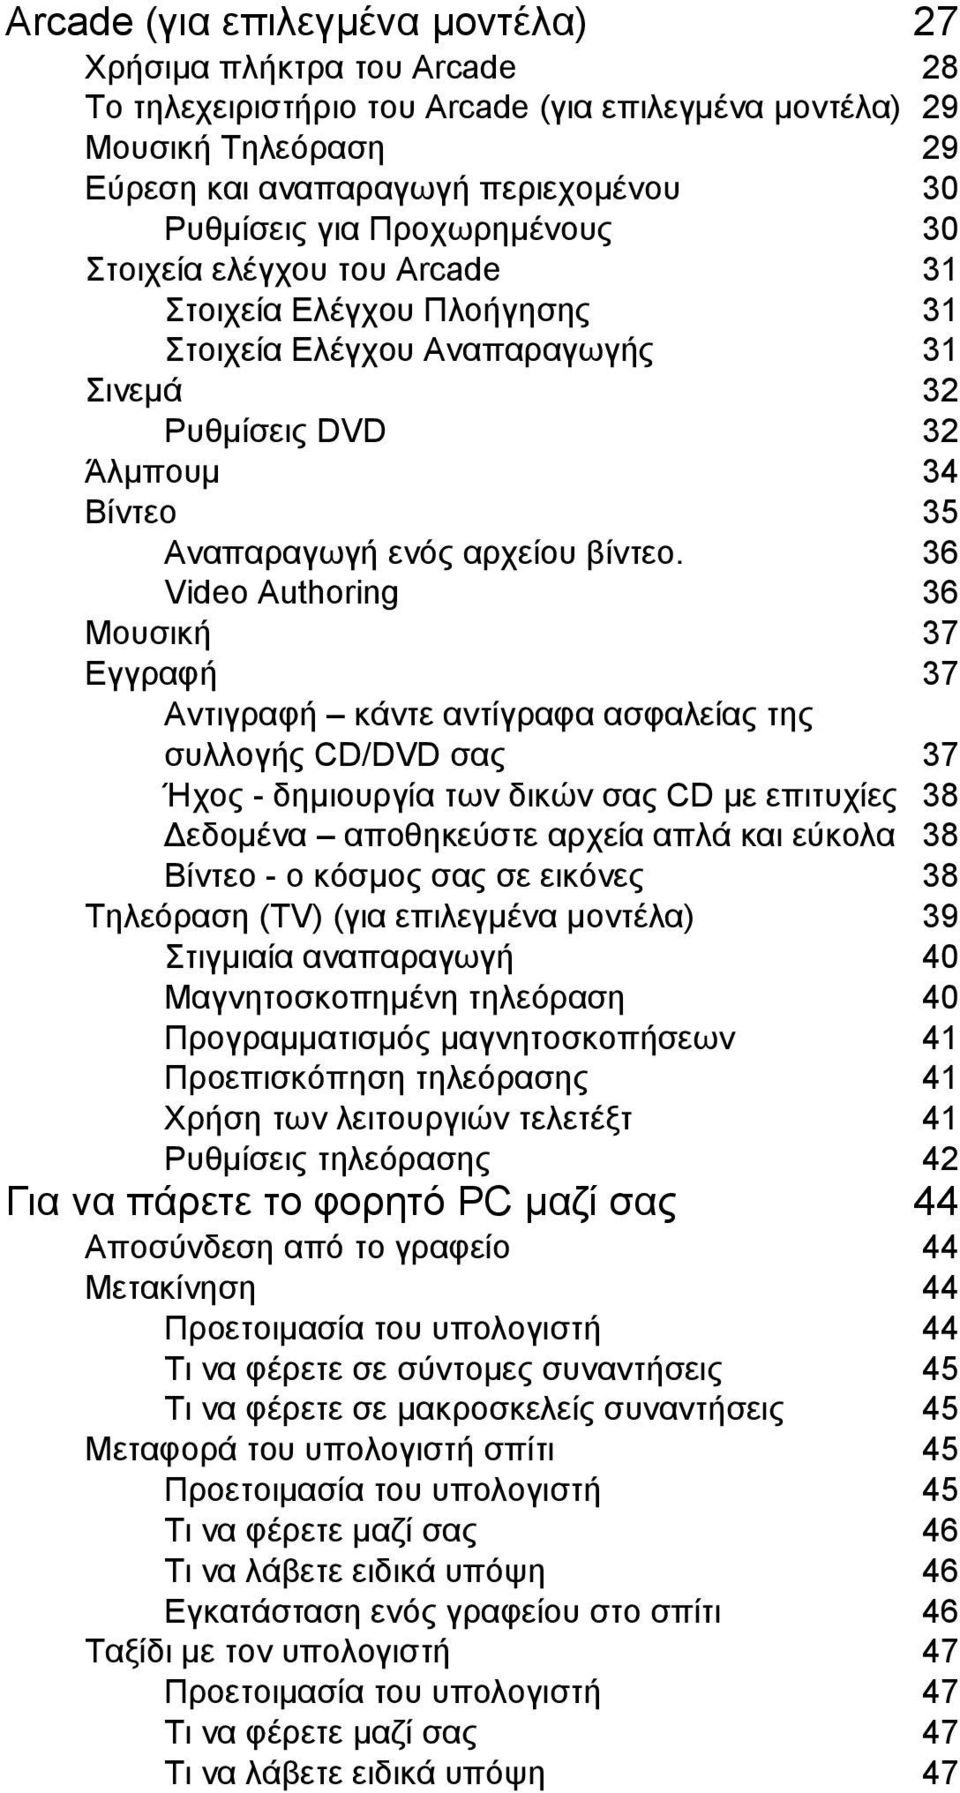 36 Video Authoring 36 Μουσική 37 Εγγραφή 37 Αντιγραφή κάντε αντίγραφα ασφαλείας της συλλογής CD/DVD σας 37 Ήχος - δηµιουργία των δικών σας CD µε επιτυχίες 38 εδοµένα αποθηκεύστε αρχεία απλά και